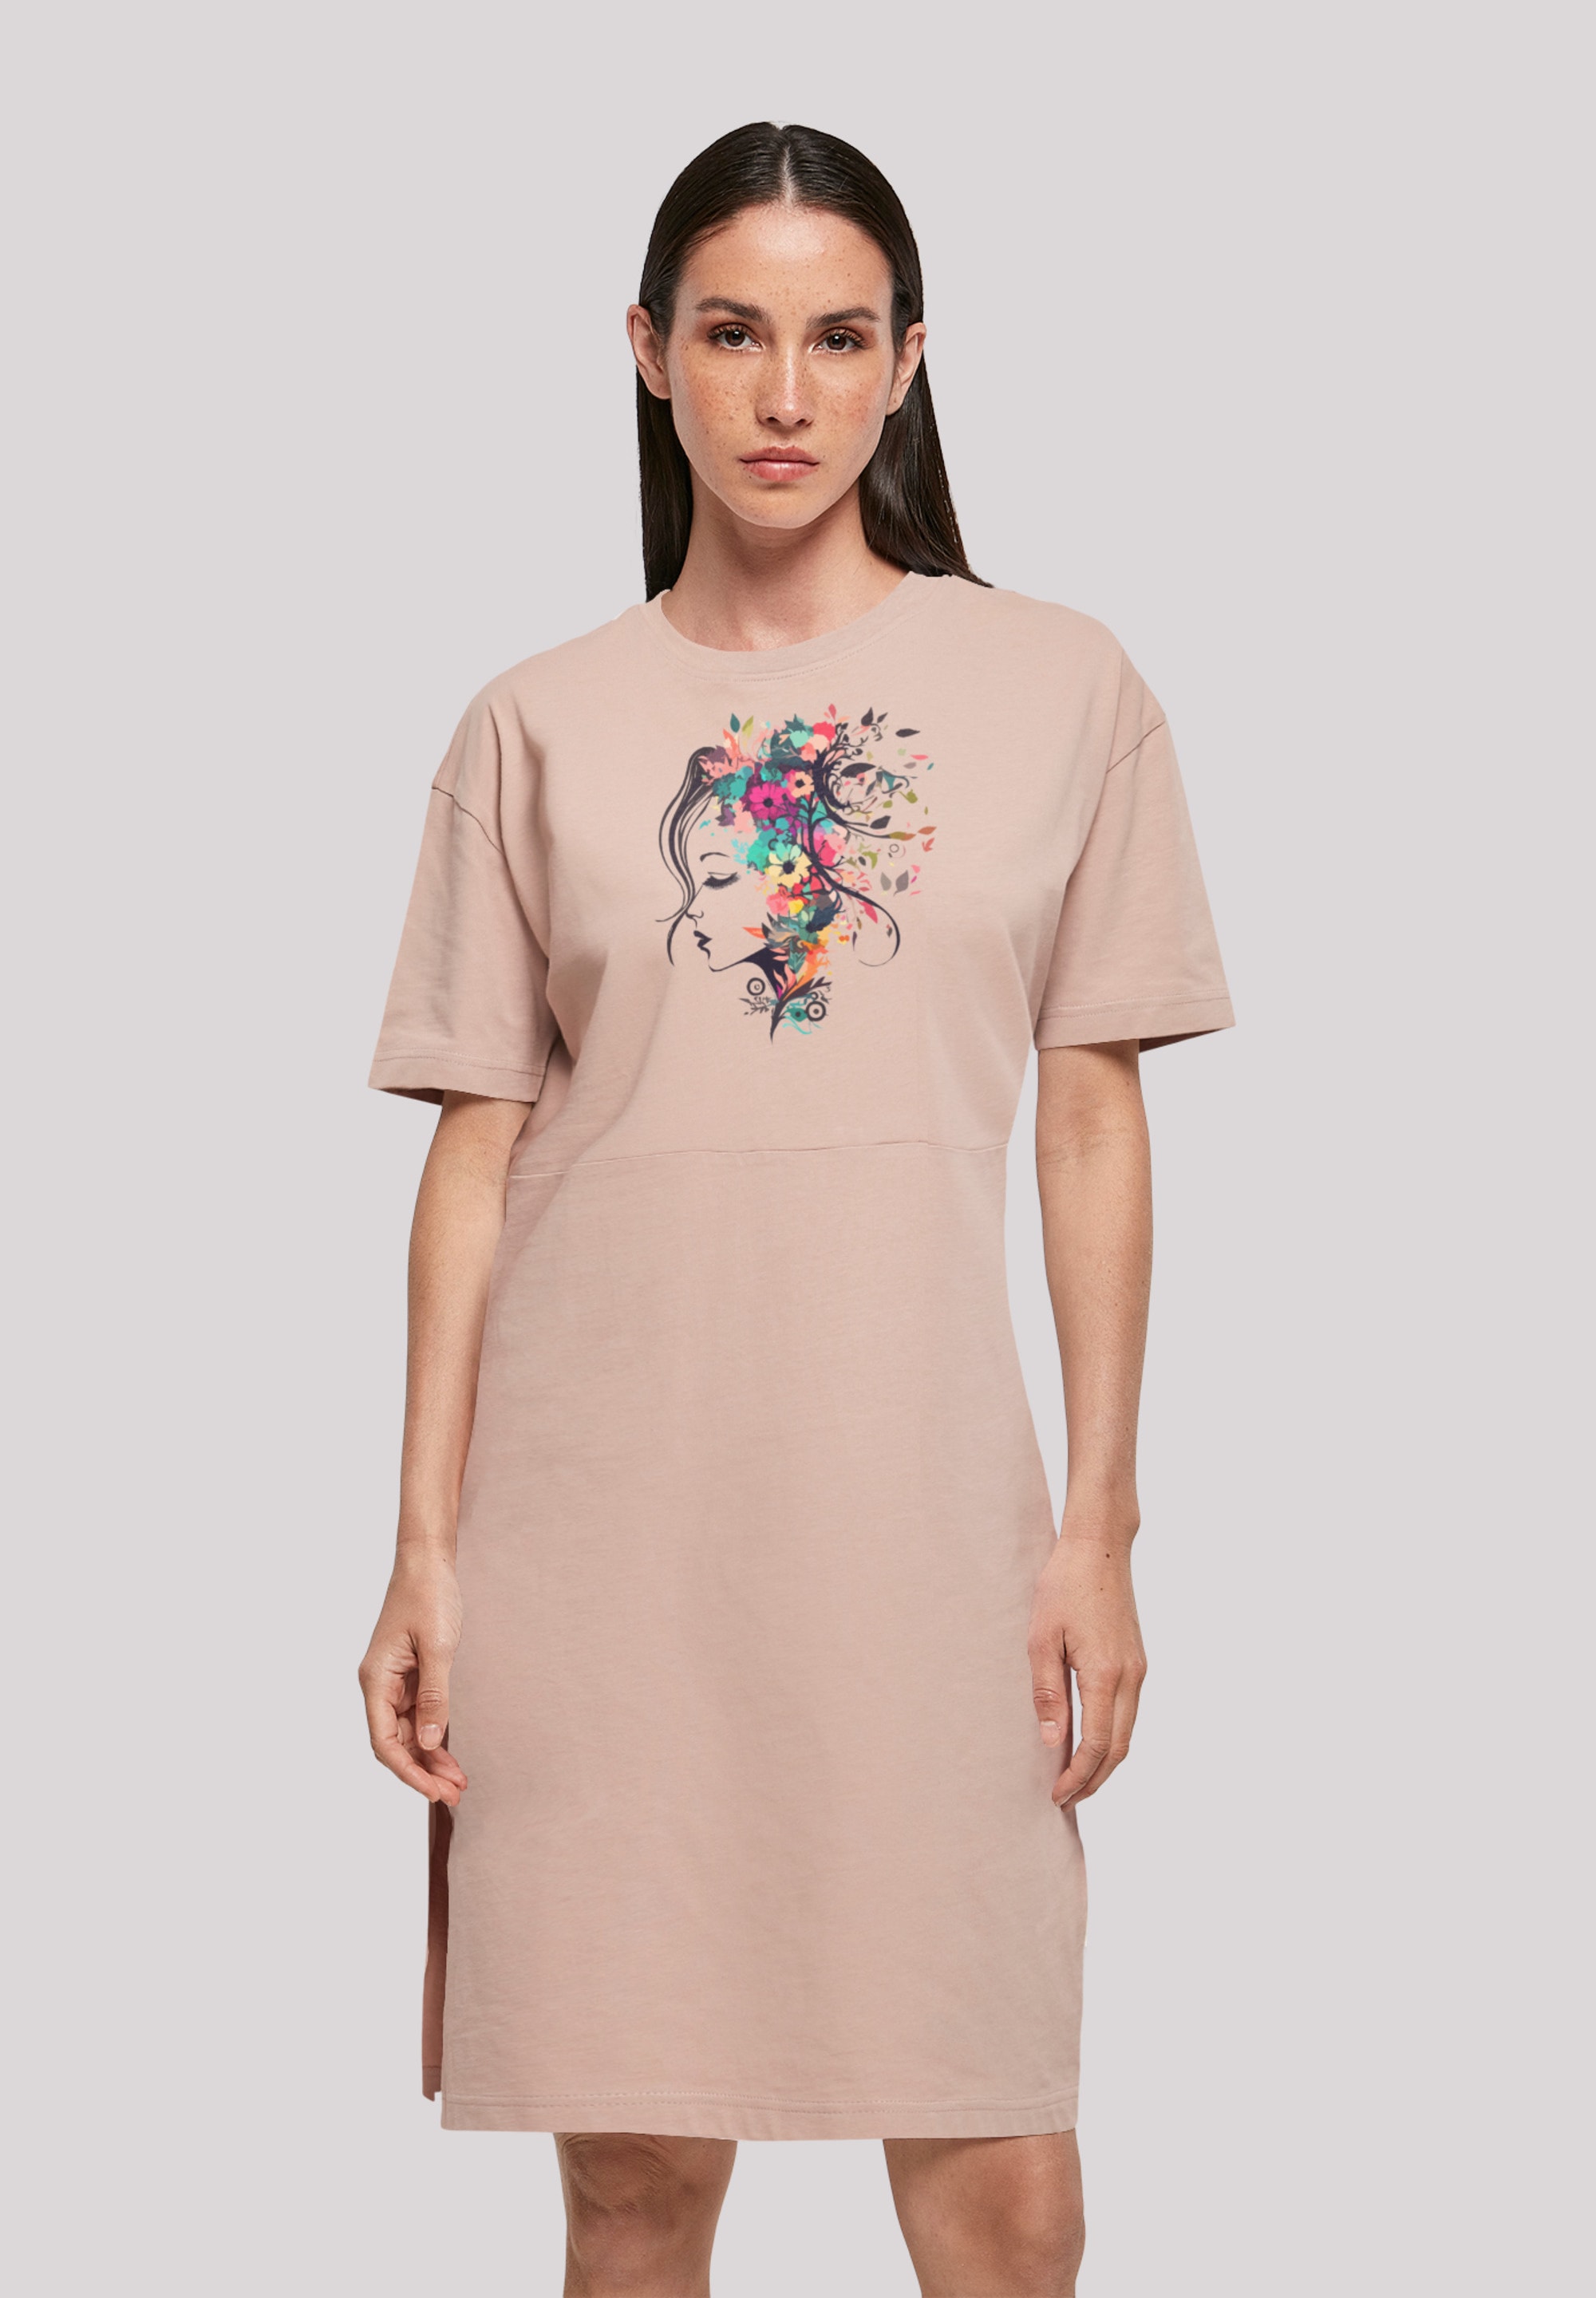 Shirtkleid »Blumen Silhouette Bunt«, Print